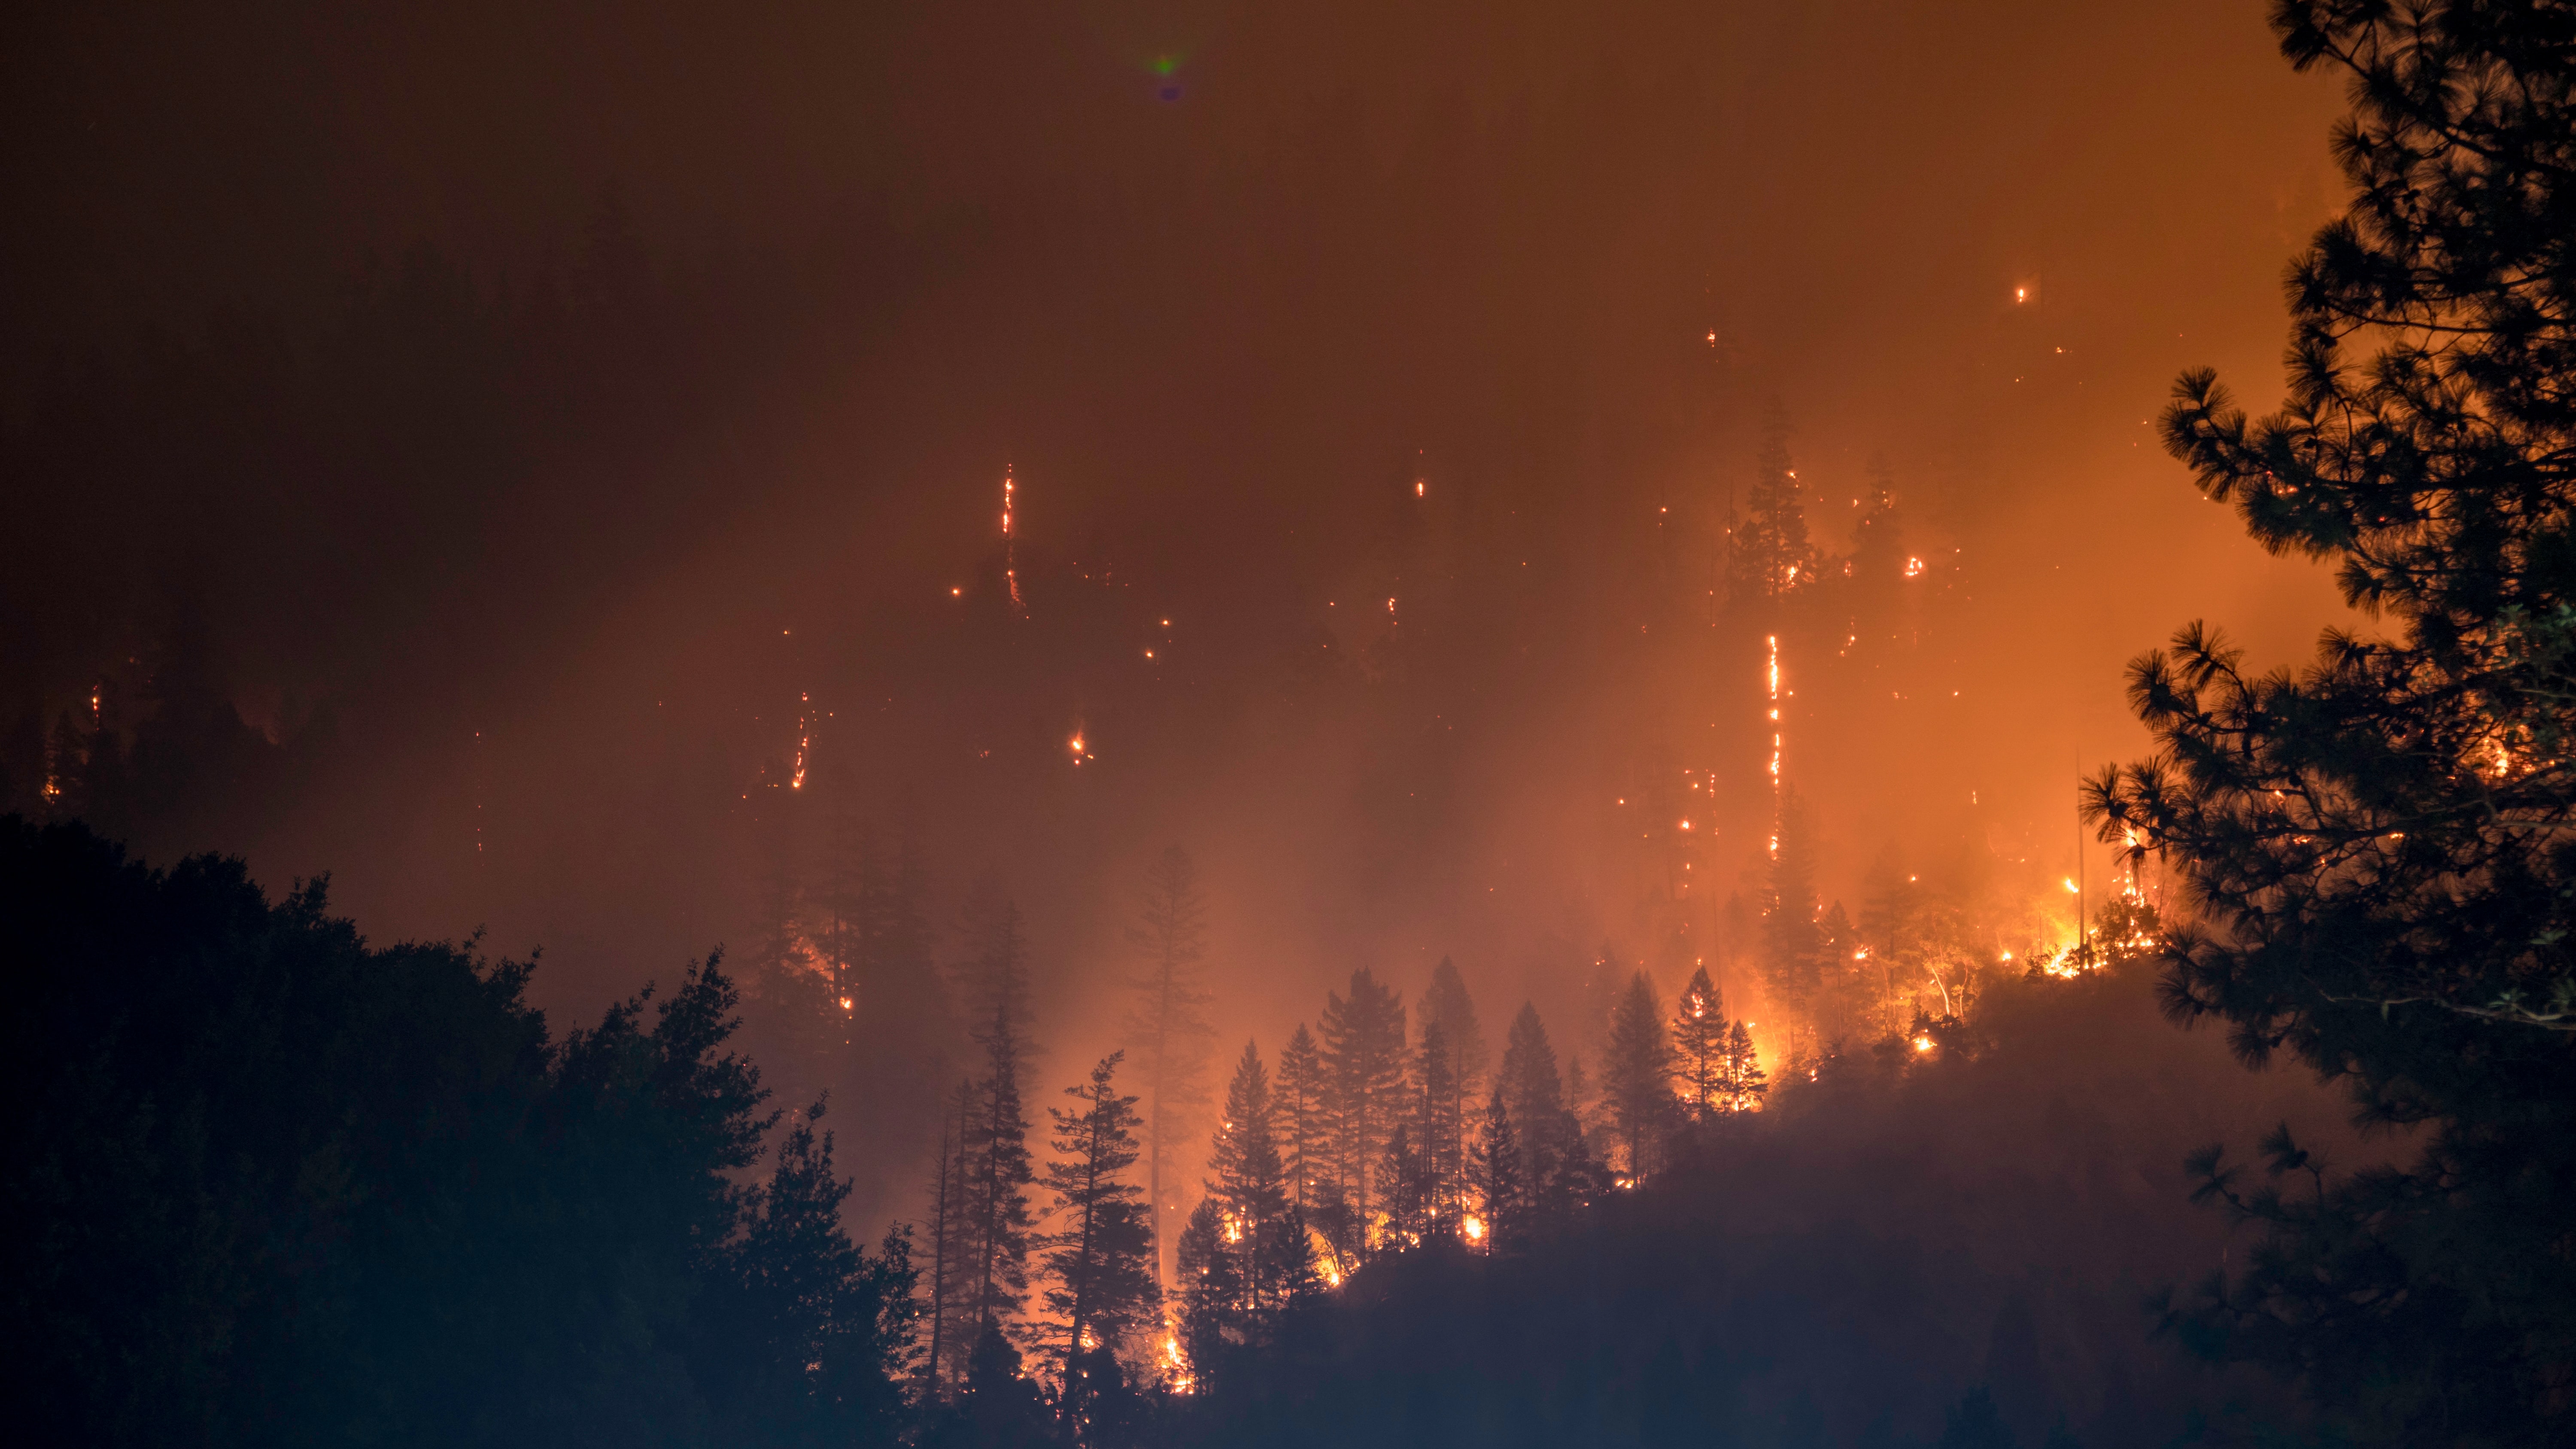 AB, orman yangınlarıyla mücadele için Fransa'ya uçak gönderdi